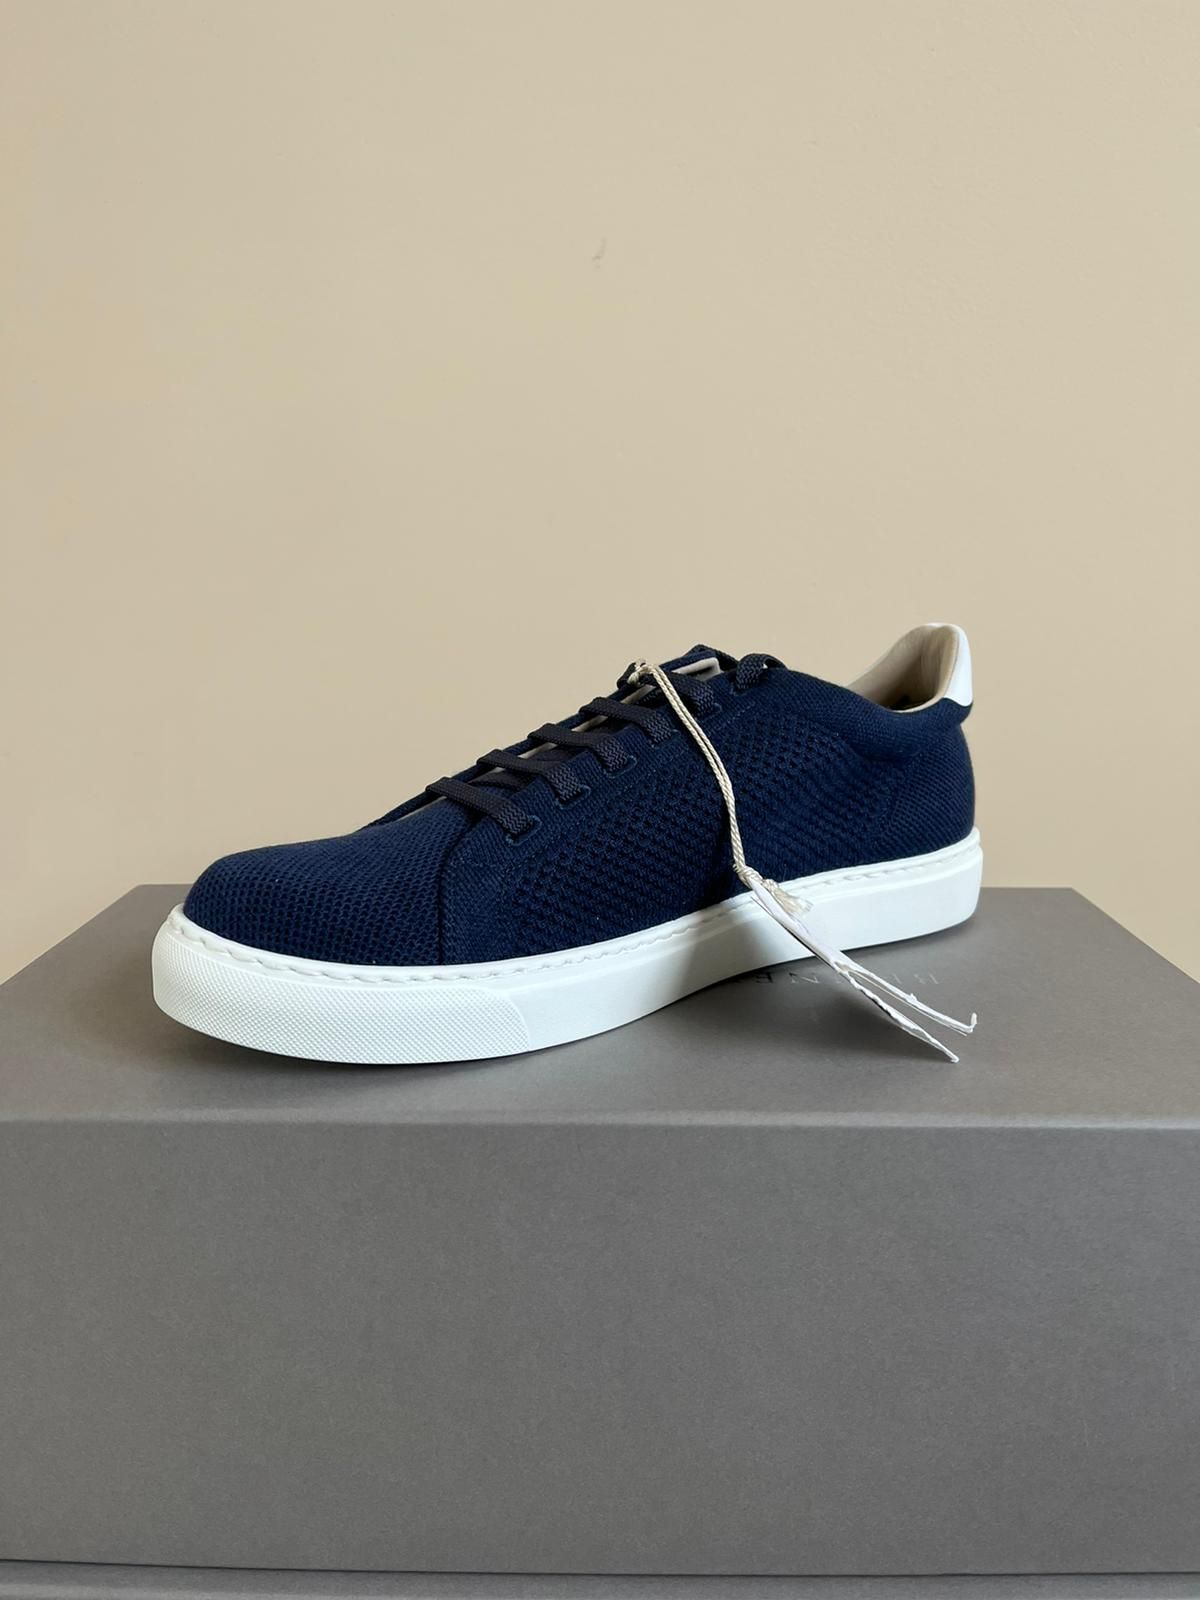 Brunello Cucinelli Low Profile Sneaker Shoe in Dark Blue Color | Grailed